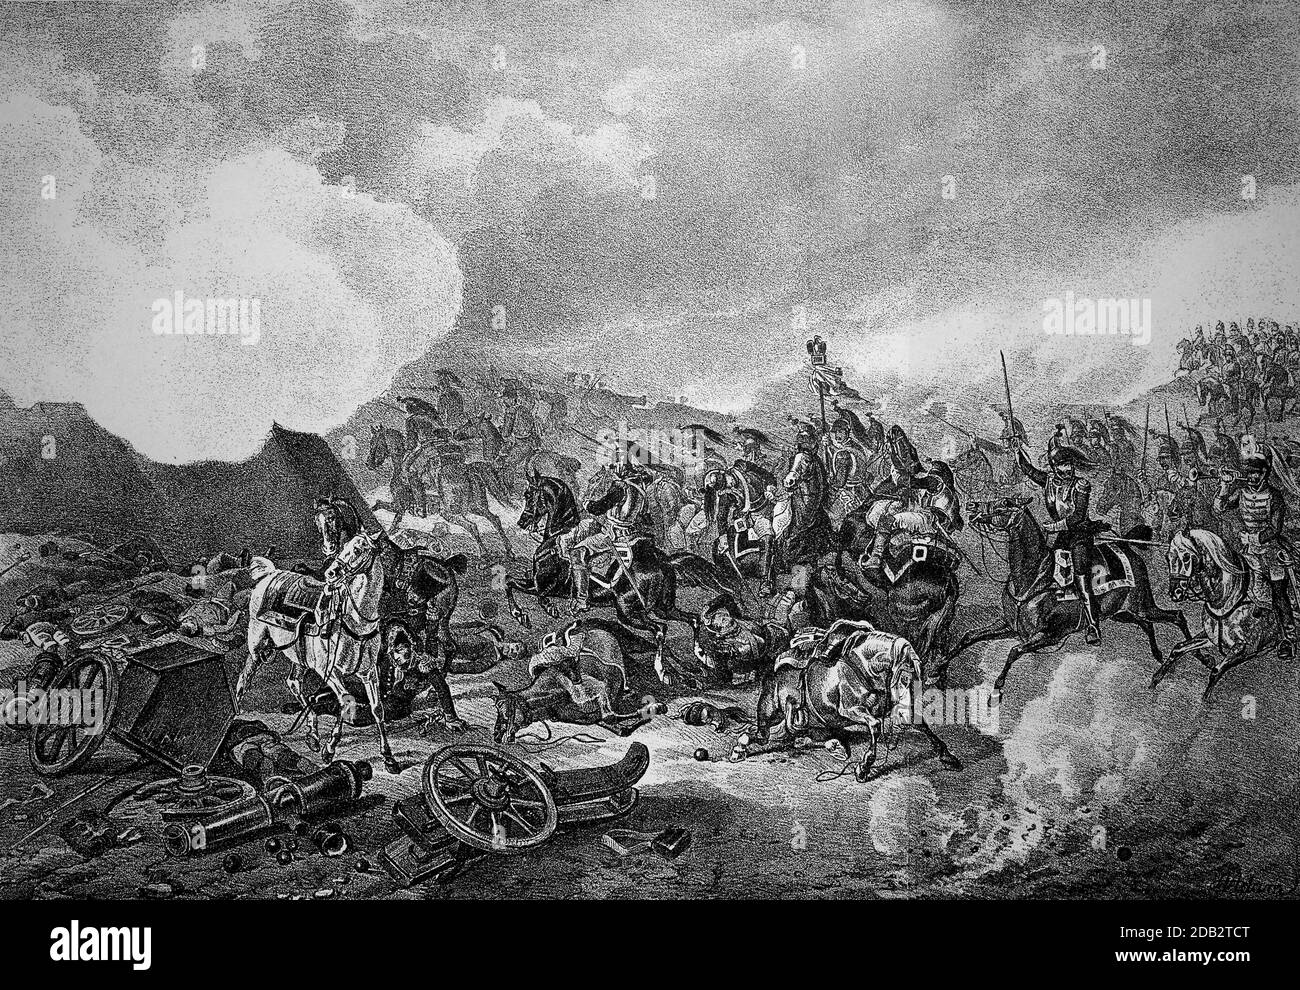 Schlacht von Borodino, Schlacht von Moschaisk, Schlacht von Moskwa, war eine Schlacht der napoleonischen russischen Kampagne. Am 7. September 1812 führte die französische Grande Armee unter Napoleon und die russische Armee unter General Kutusow eine der blutigsten Schlachten des 19. Jahrhunderts bei Borodino. Hier das Stormen des großen Zweifels / Schlacht bei Borodino, Schlacht bei Moschaisk, Schlacht an der Moskwa, war eine Schlacht des napoleonischen Russlandfeldzuges. Am 7. September 1812 liefern sich bei Borodino die von Napoleon geführte französische Grande Armee und die russische Armee unter General Kutusow e Stockfoto